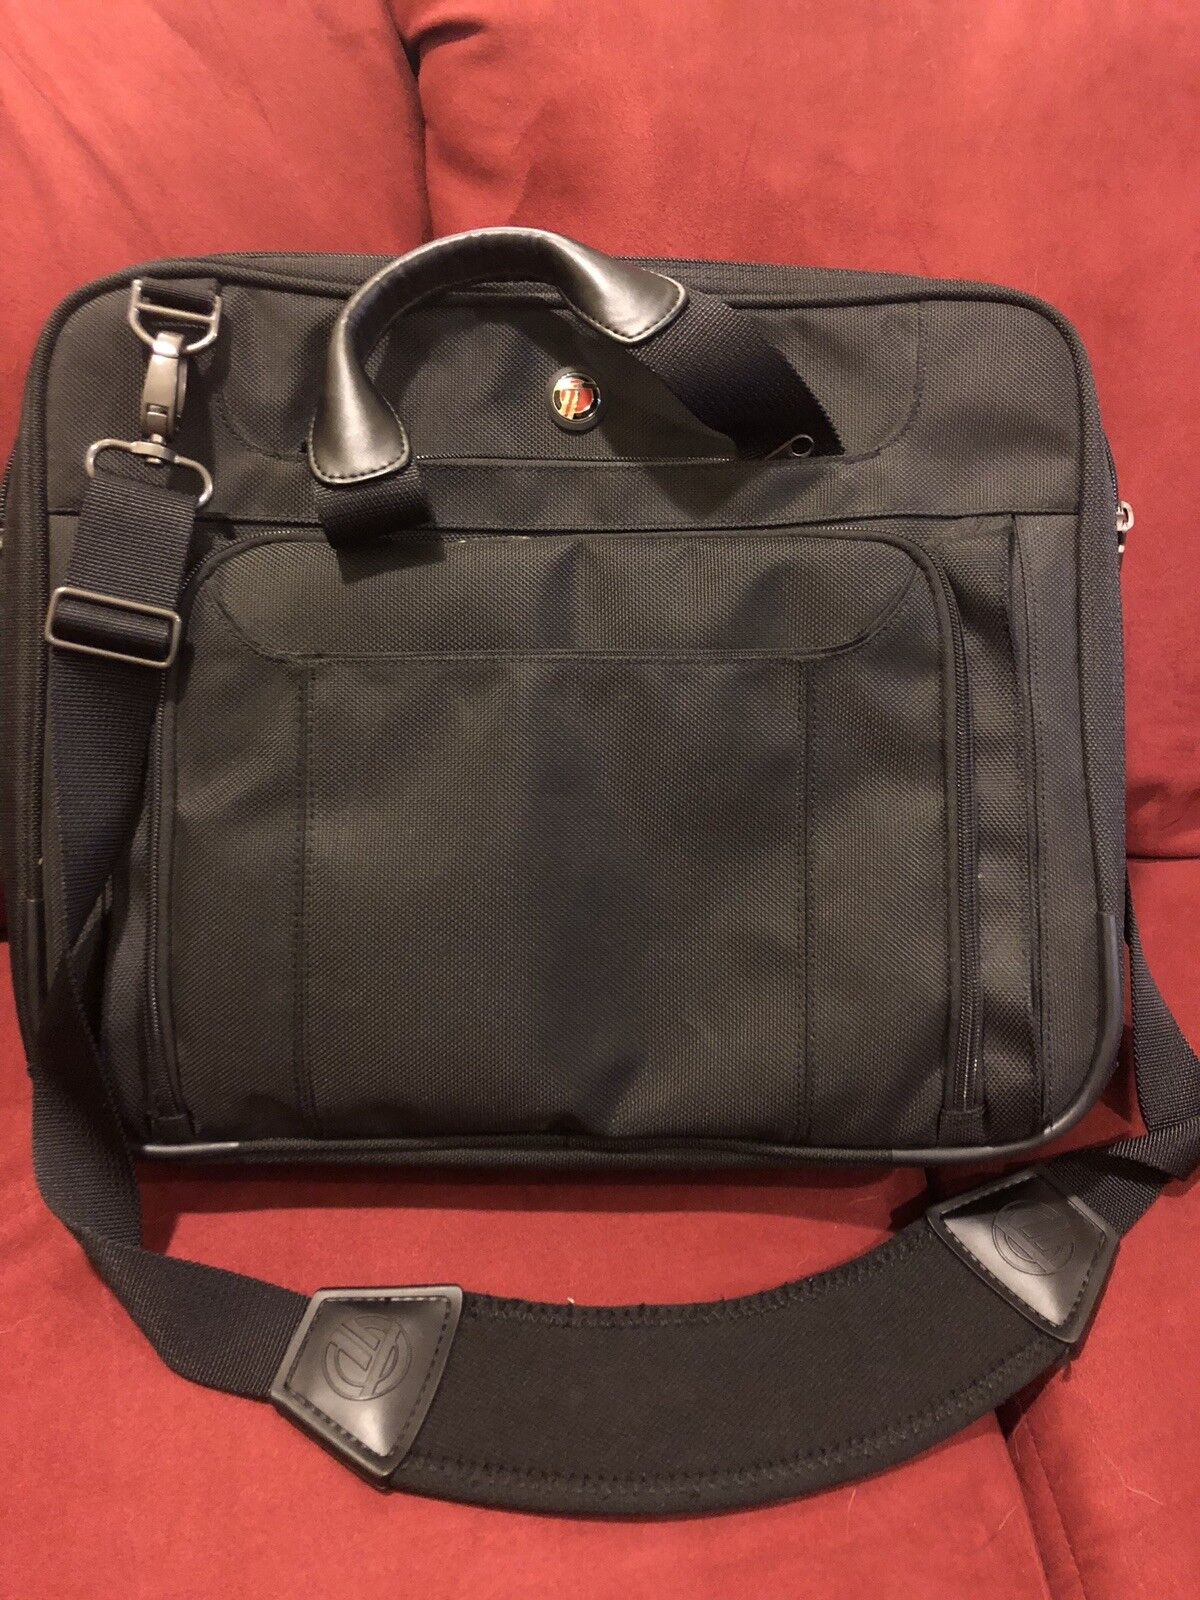 Targus Zip-Thru Corporate Traveler Laptop Bag CUCT02UA14S-01 with 